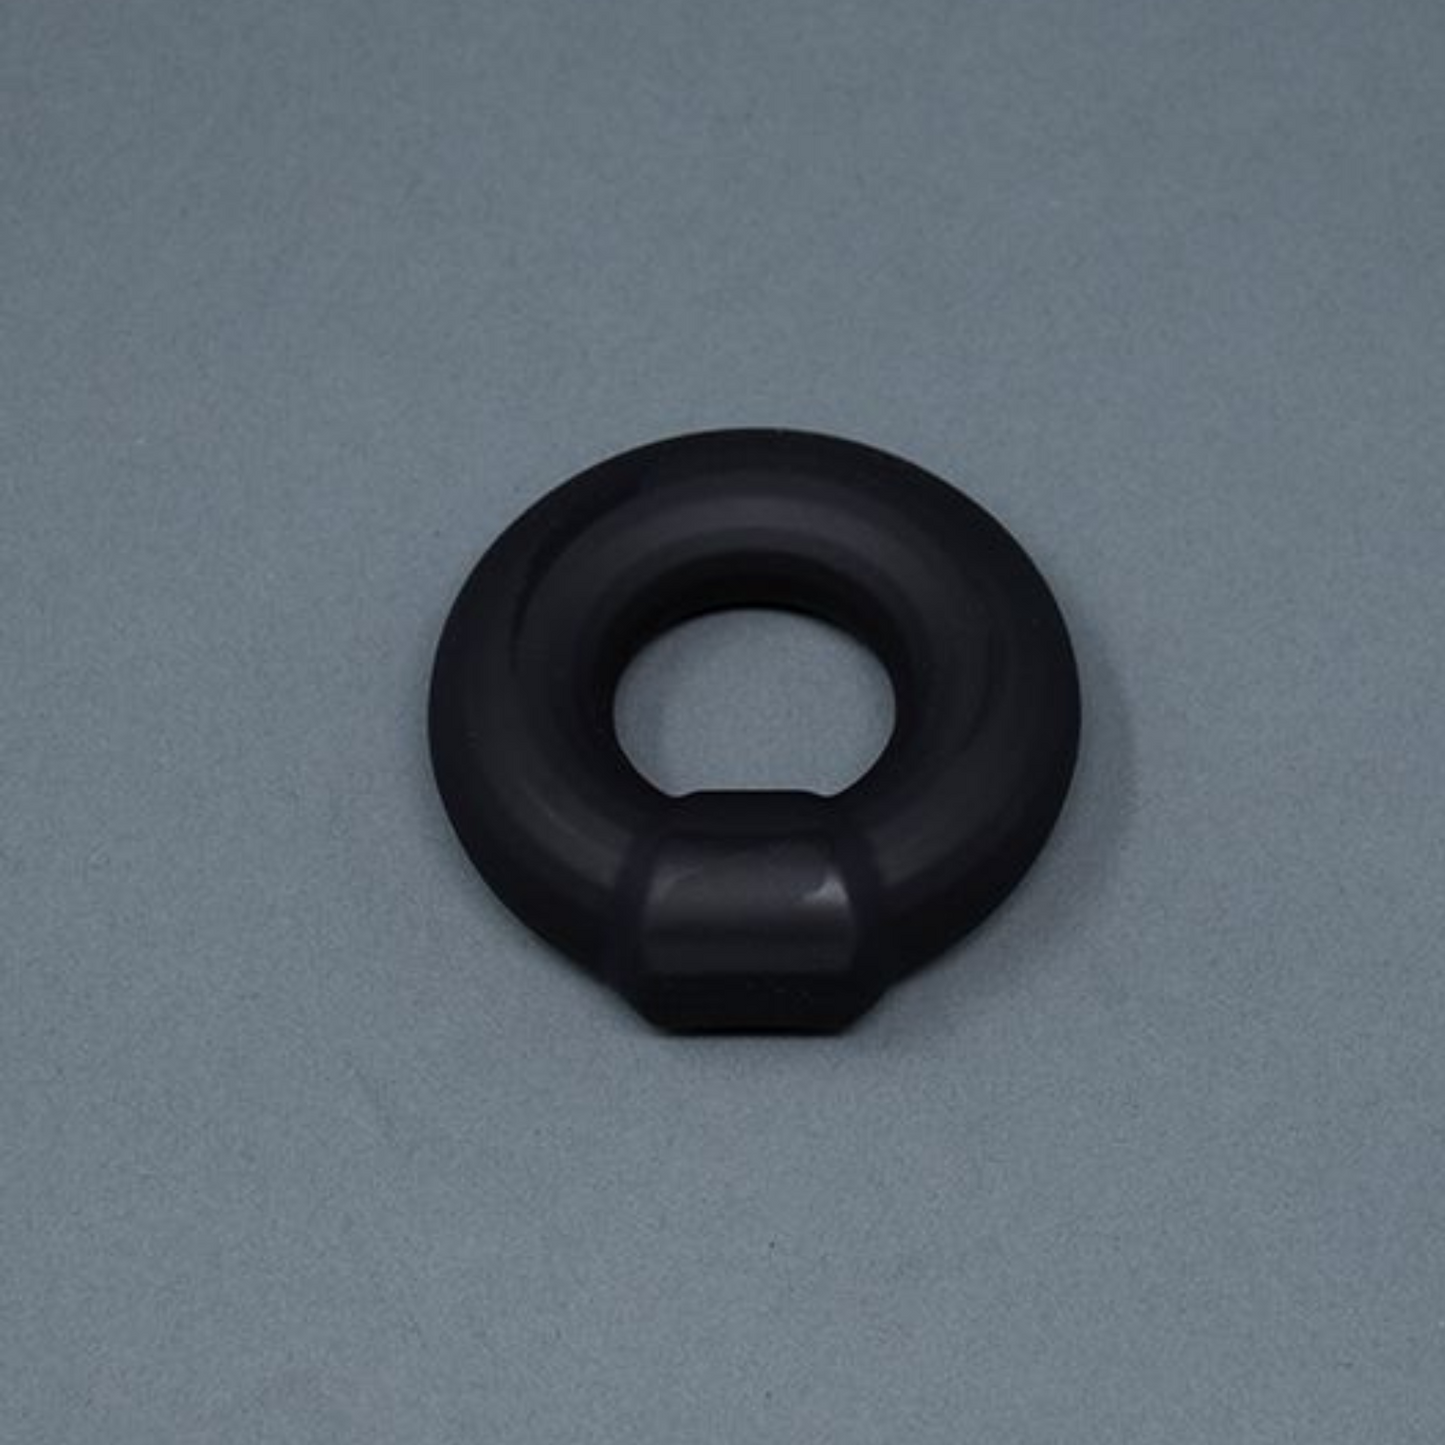 Zwarte anti-rol cock ring ontworpen door Andrew Christian en te koop bij Flavourez.